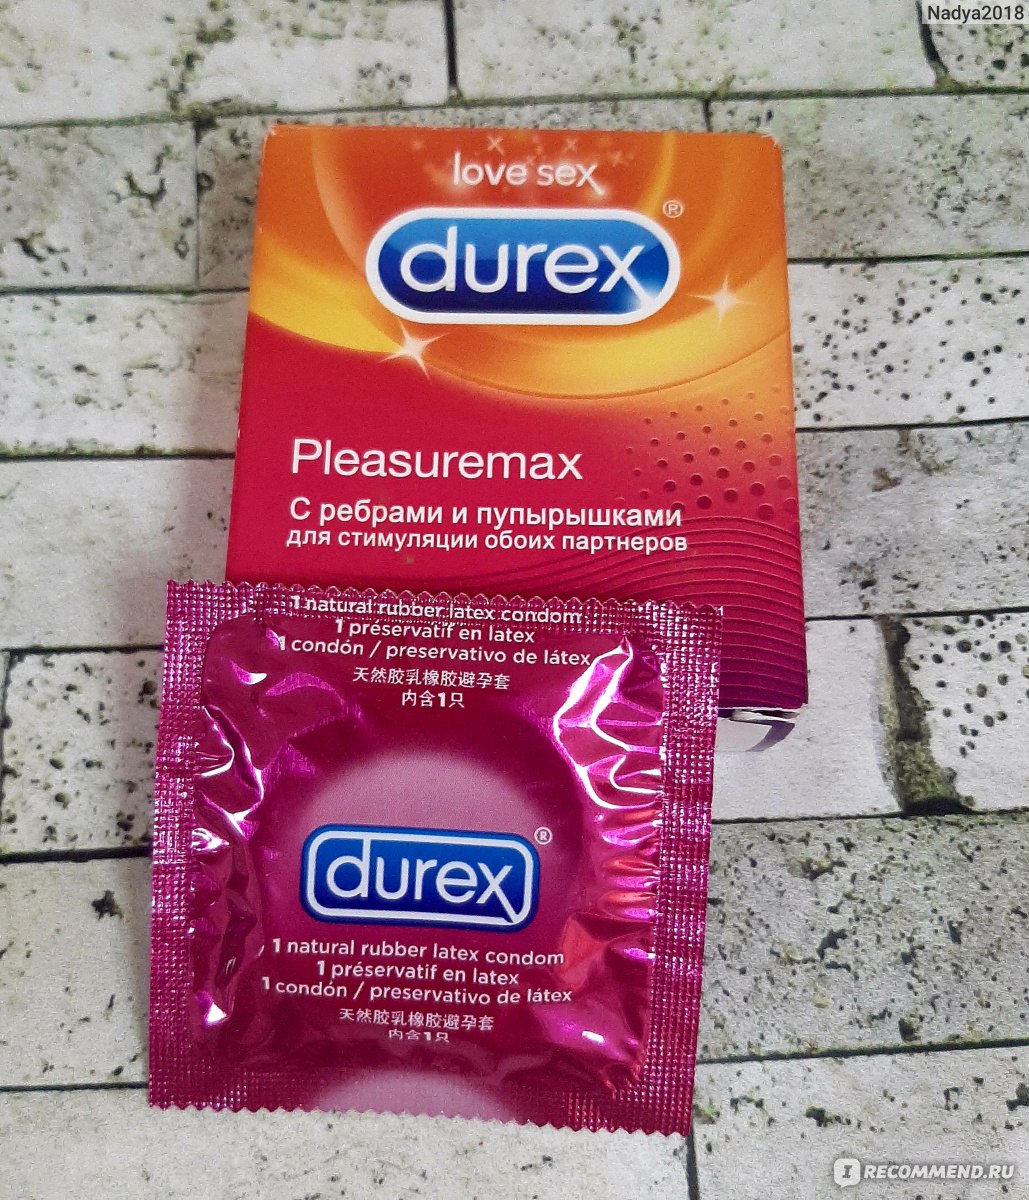 Презервативы Durex Pleasuremax с кольцами и пупырышками фото